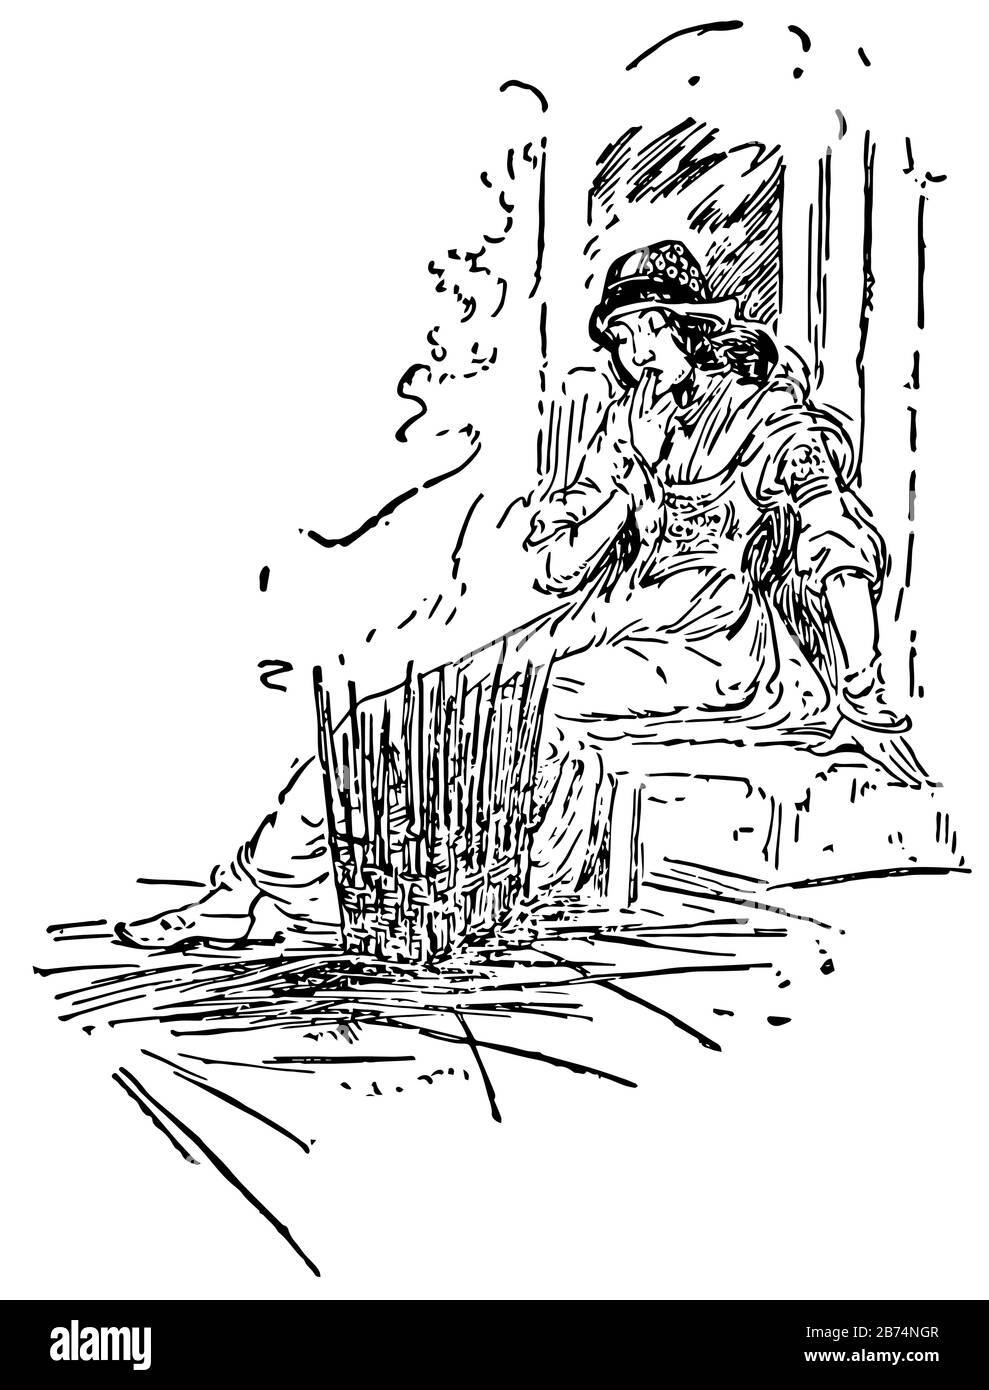 Grizzle-Beard, diese Szene zeigt ein sitzendes Weibchen, das auf einen Korb blickt, der aus Holzstäbchen, Vintage-Line-Zeichnung oder Gravurabbildung besteht Stock Vektor